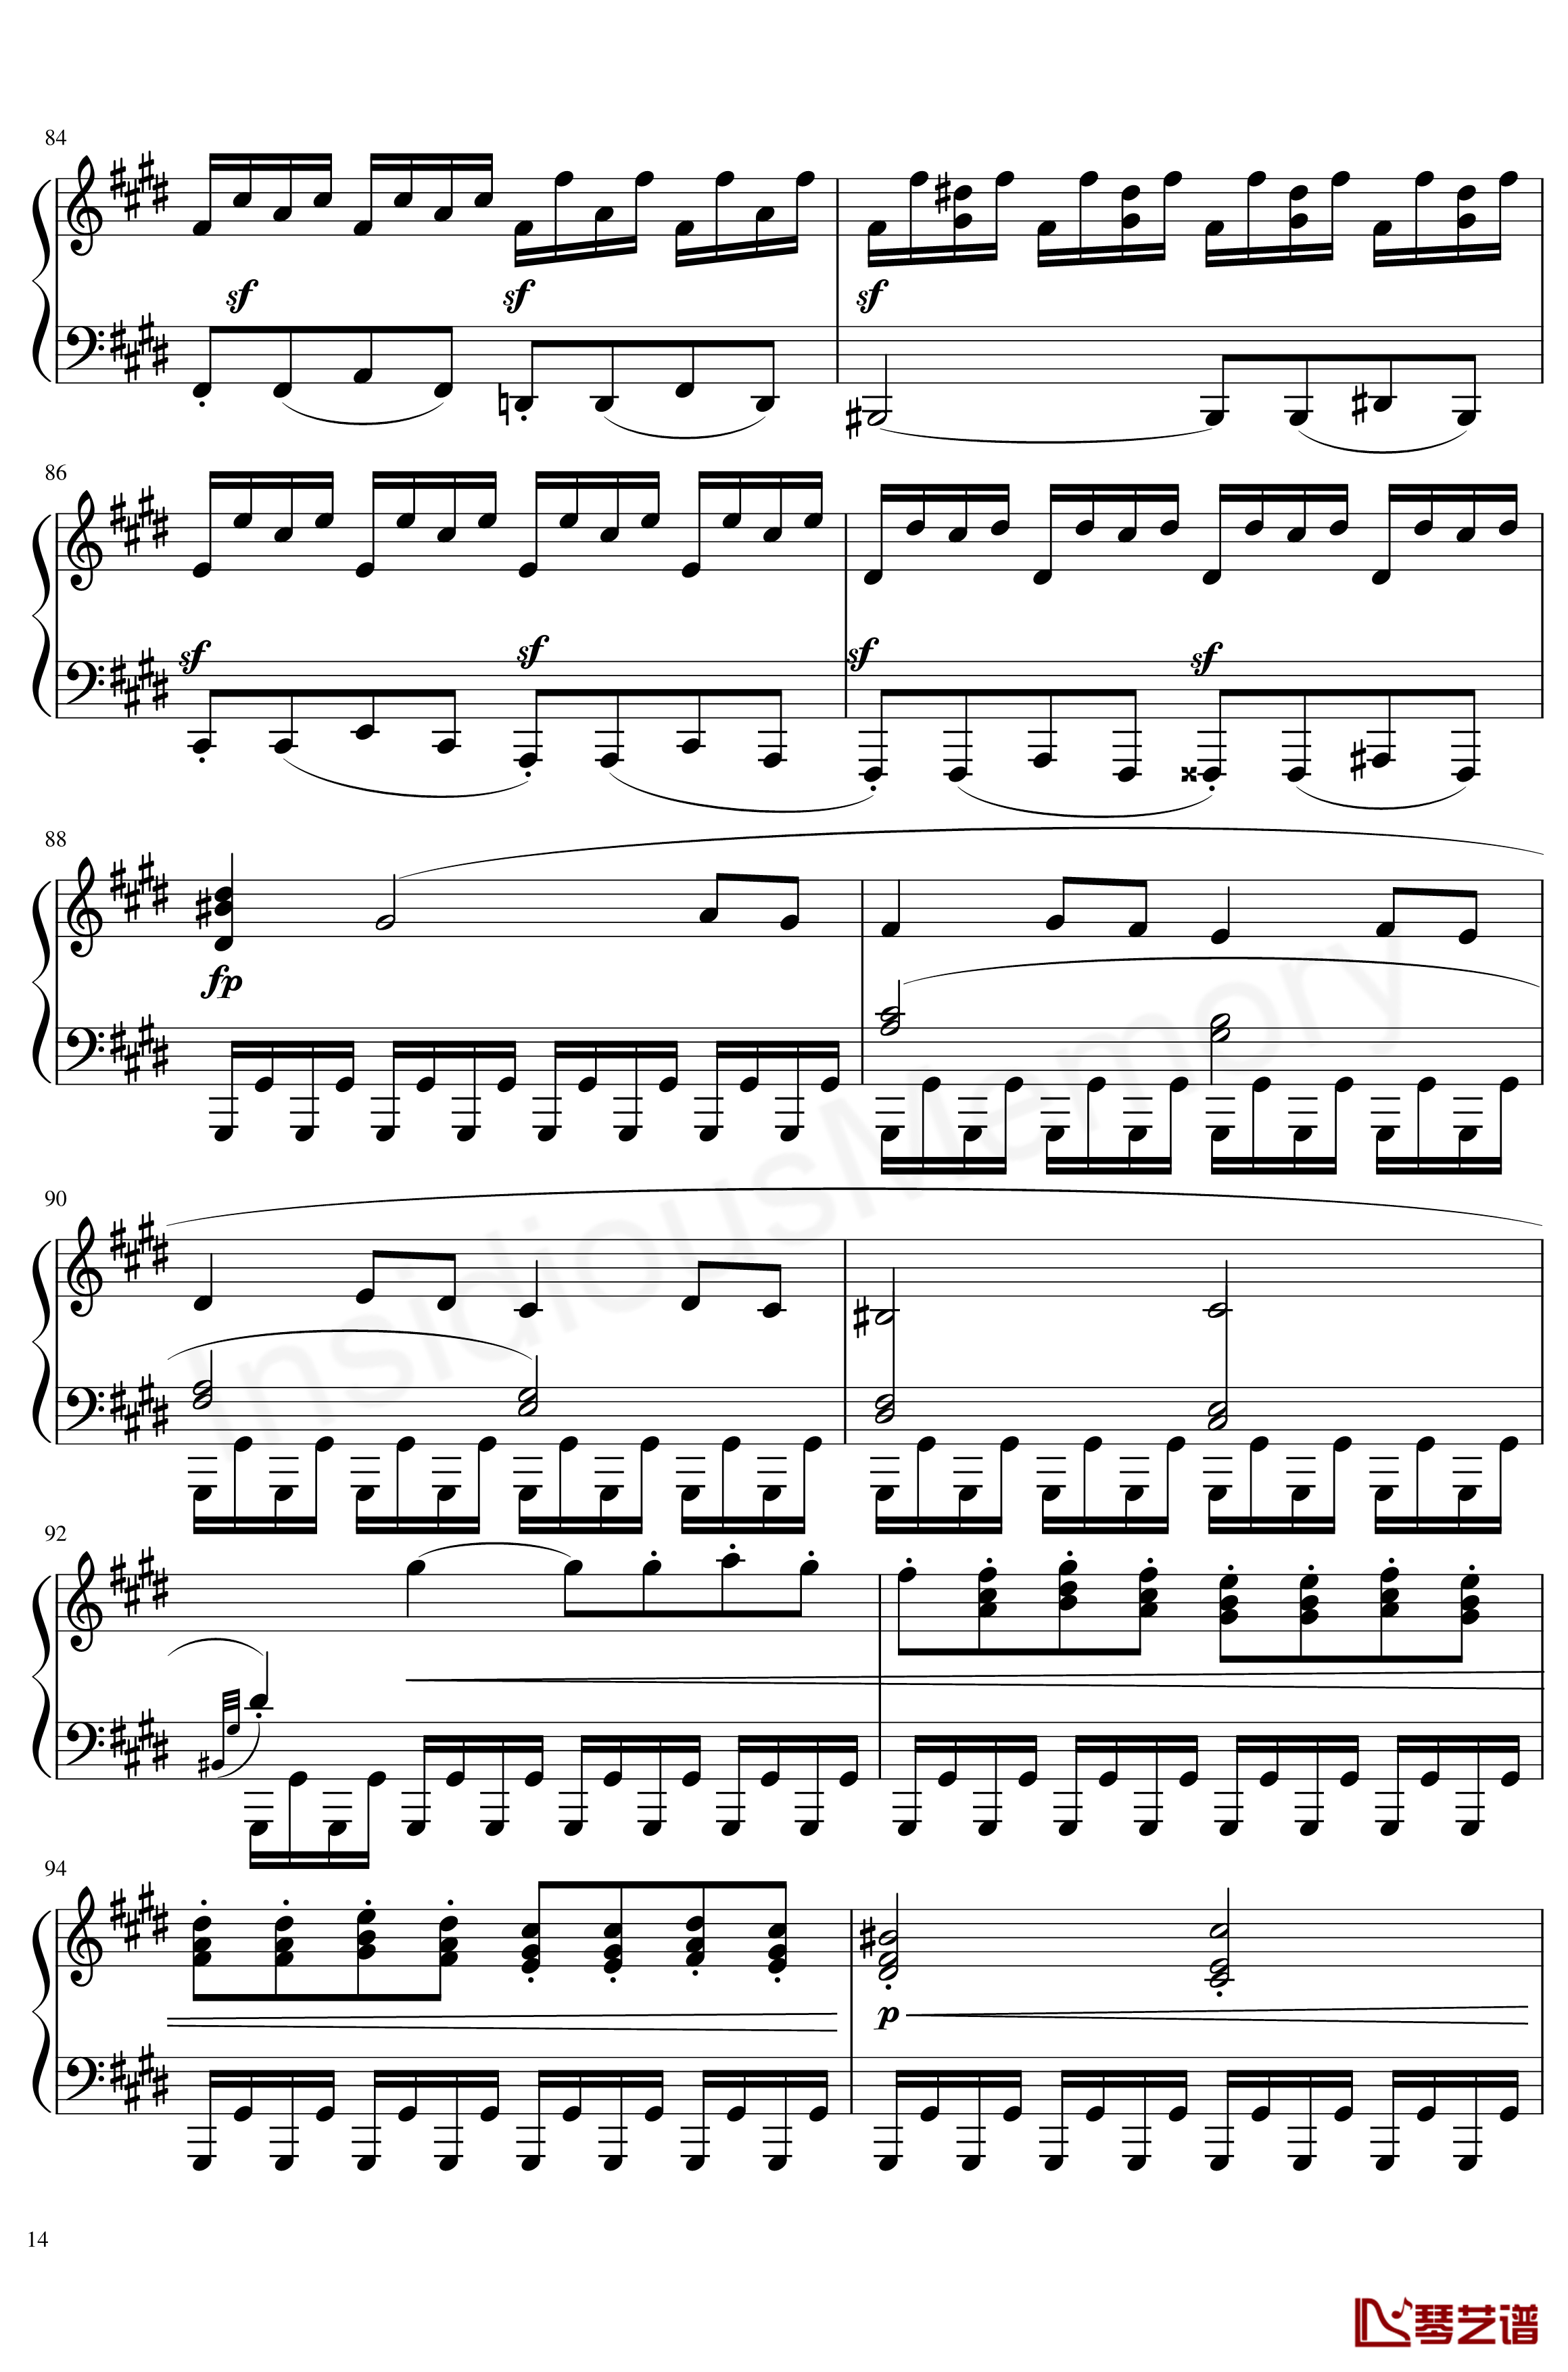 月光奏鸣曲钢琴谱-贝多芬-beethoven14